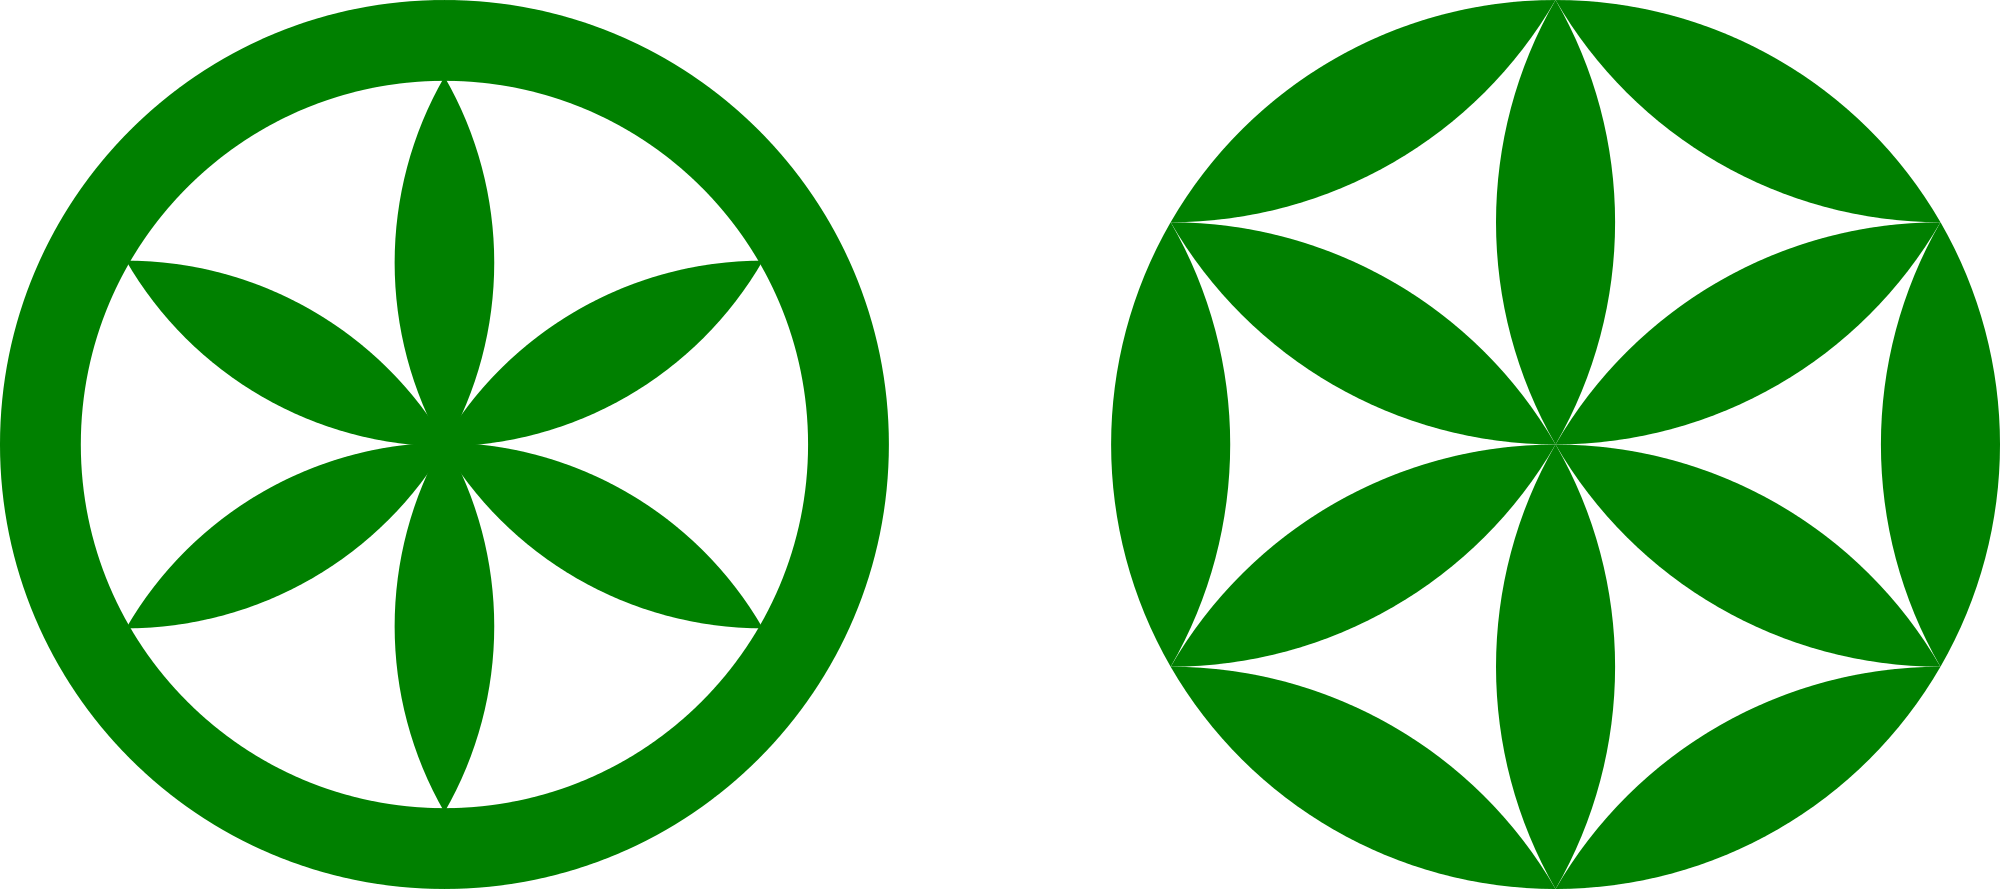 Green Flower Shape of Logo - Sun of the Alps vs Flower of Life rosette shape.svg